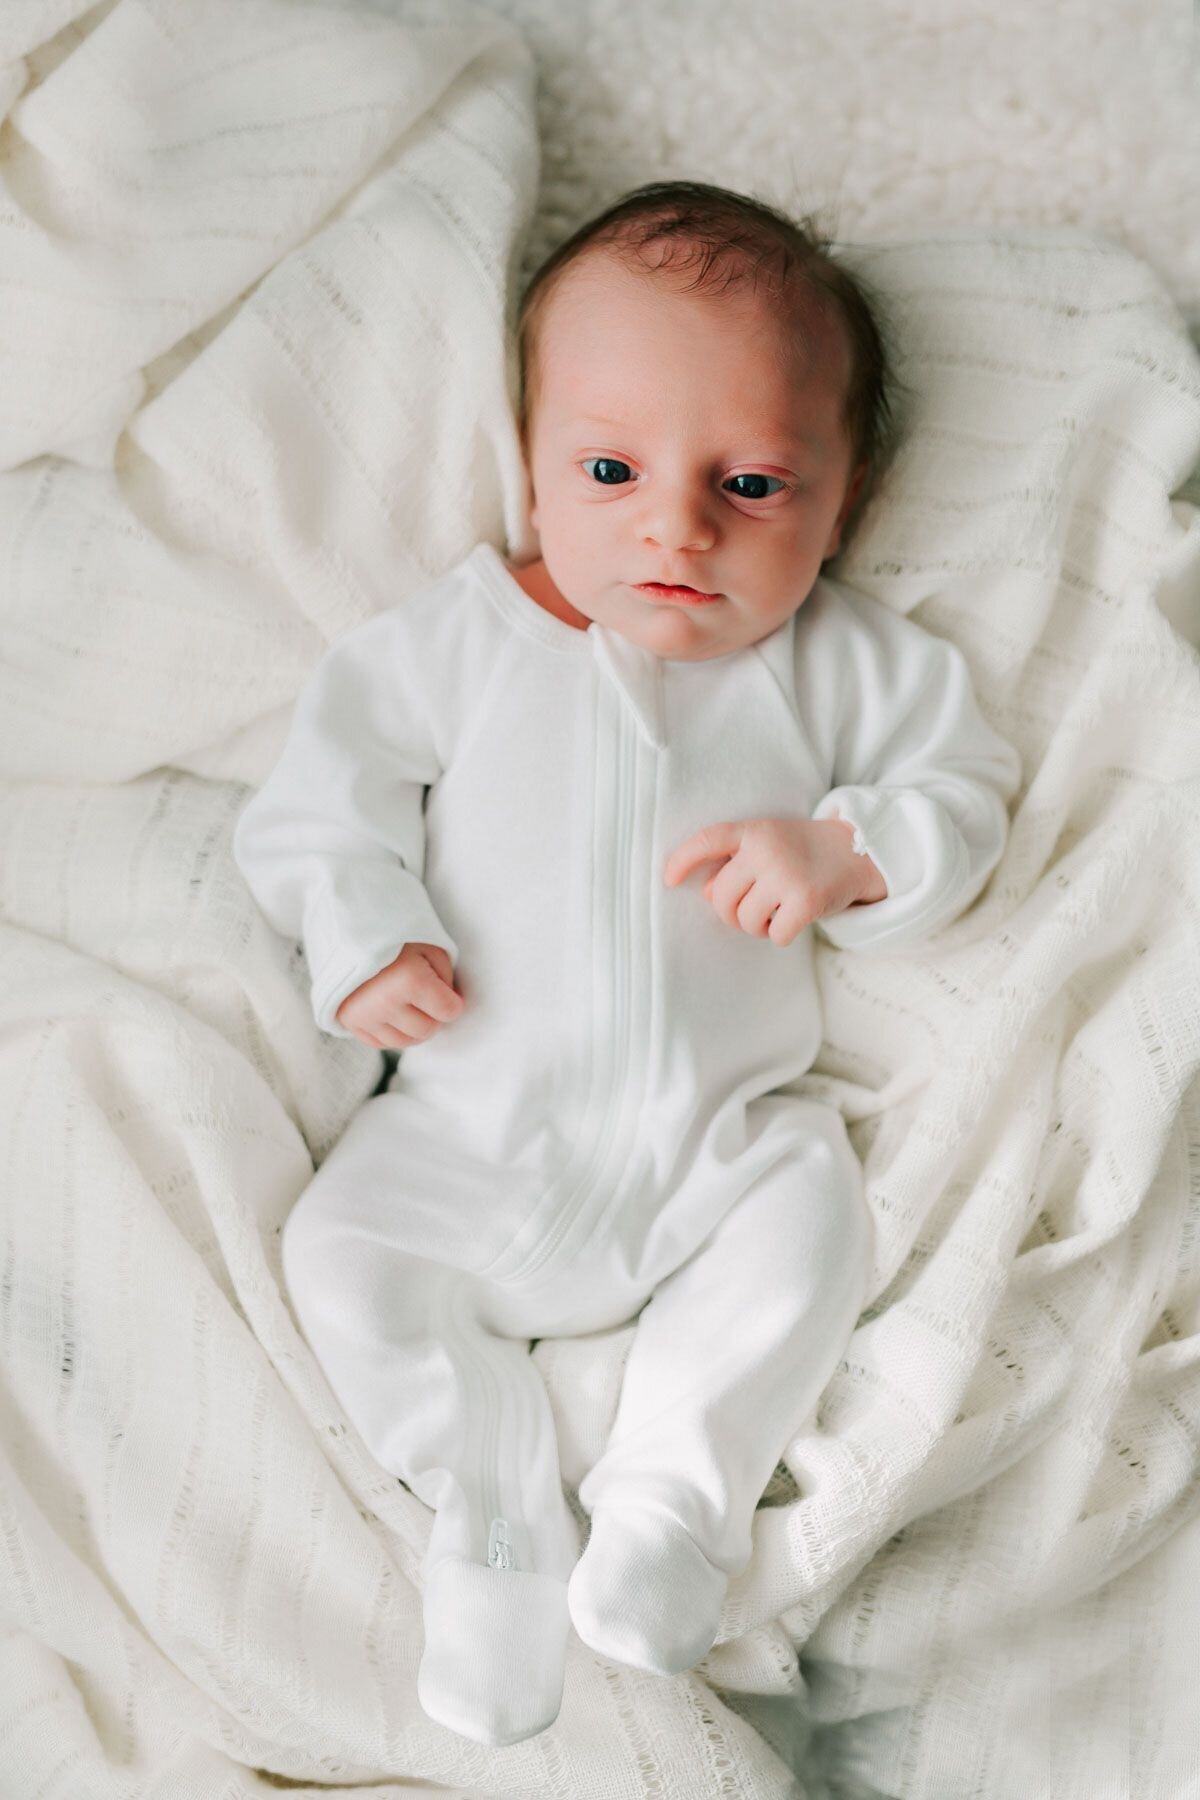 Newborn baby in a white onesie